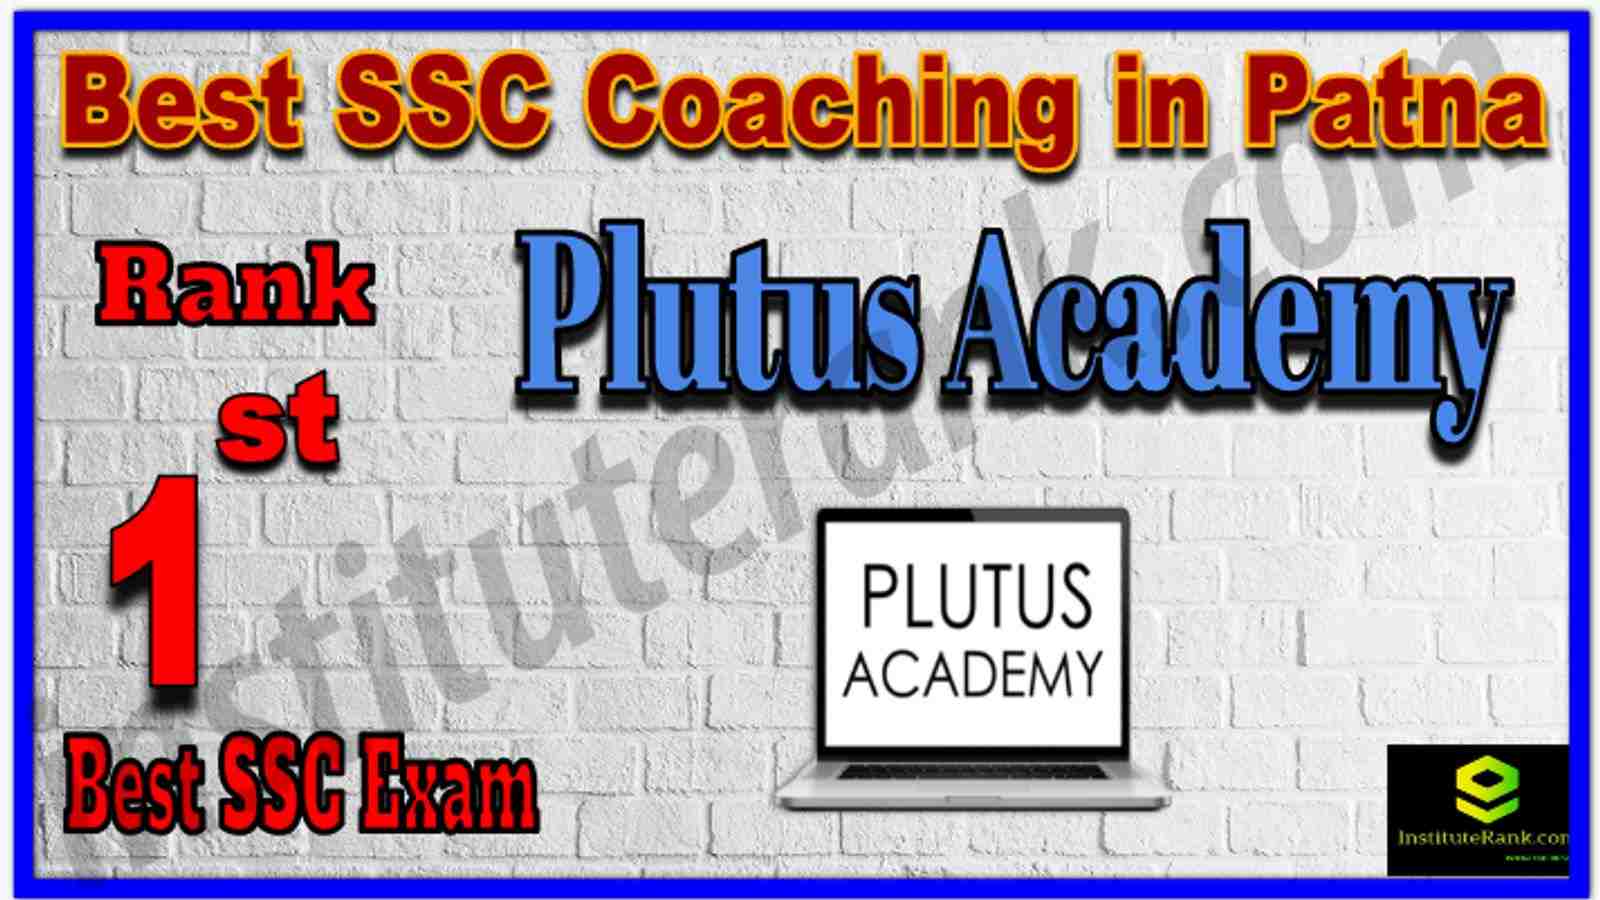 Rank 1st Best SSC Coaching in Patna